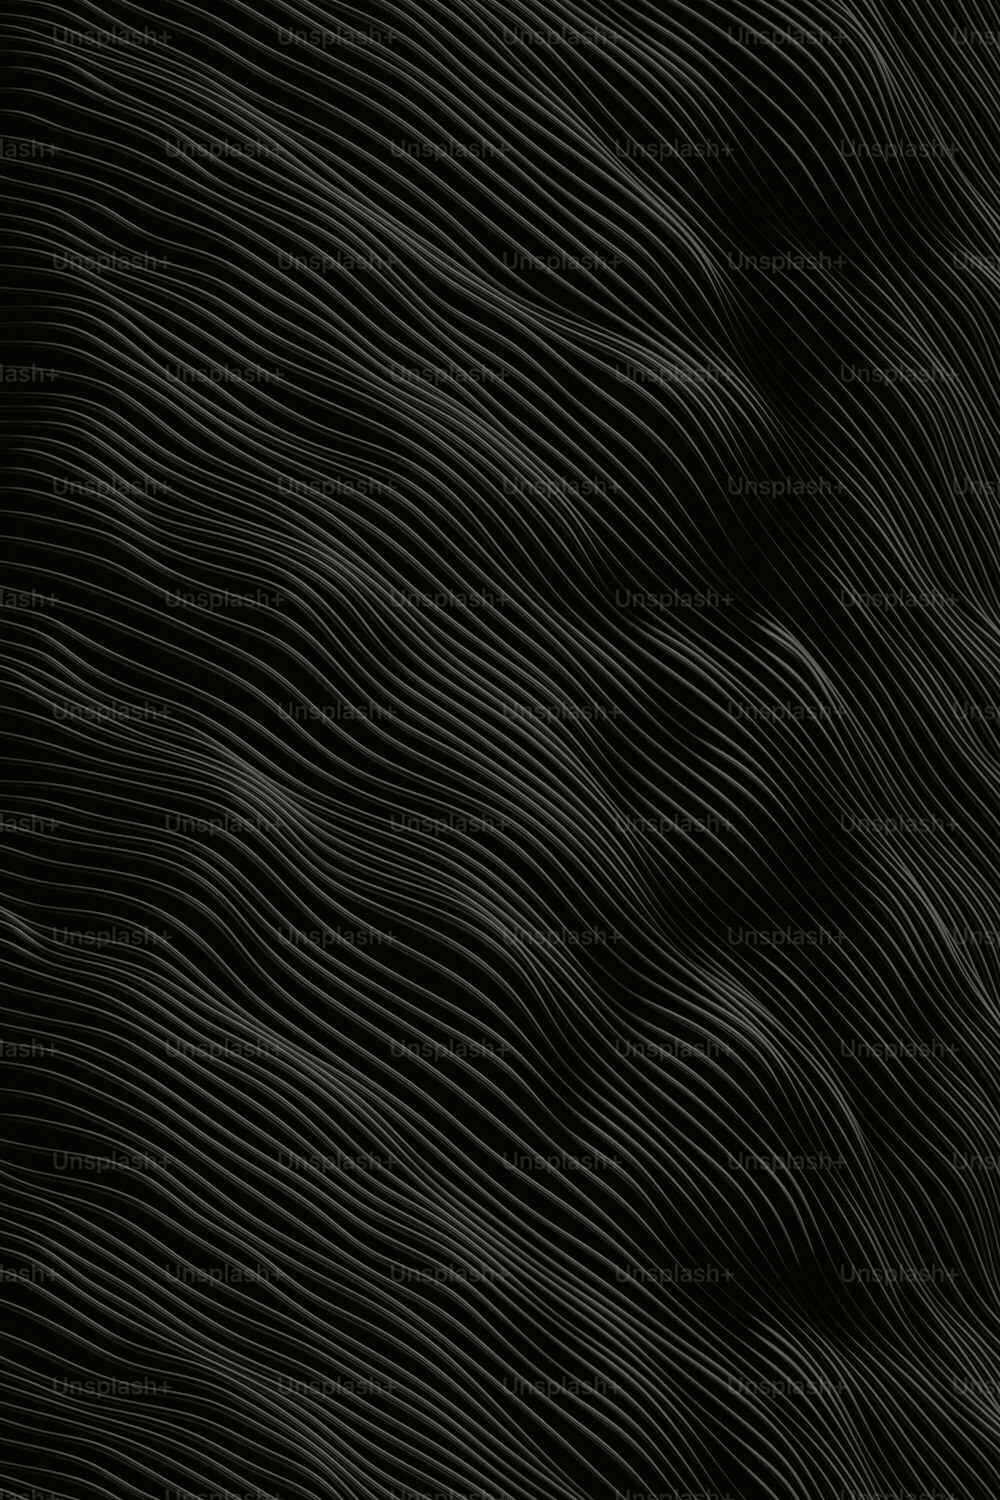 un fondo en blanco y negro con líneas onduladas